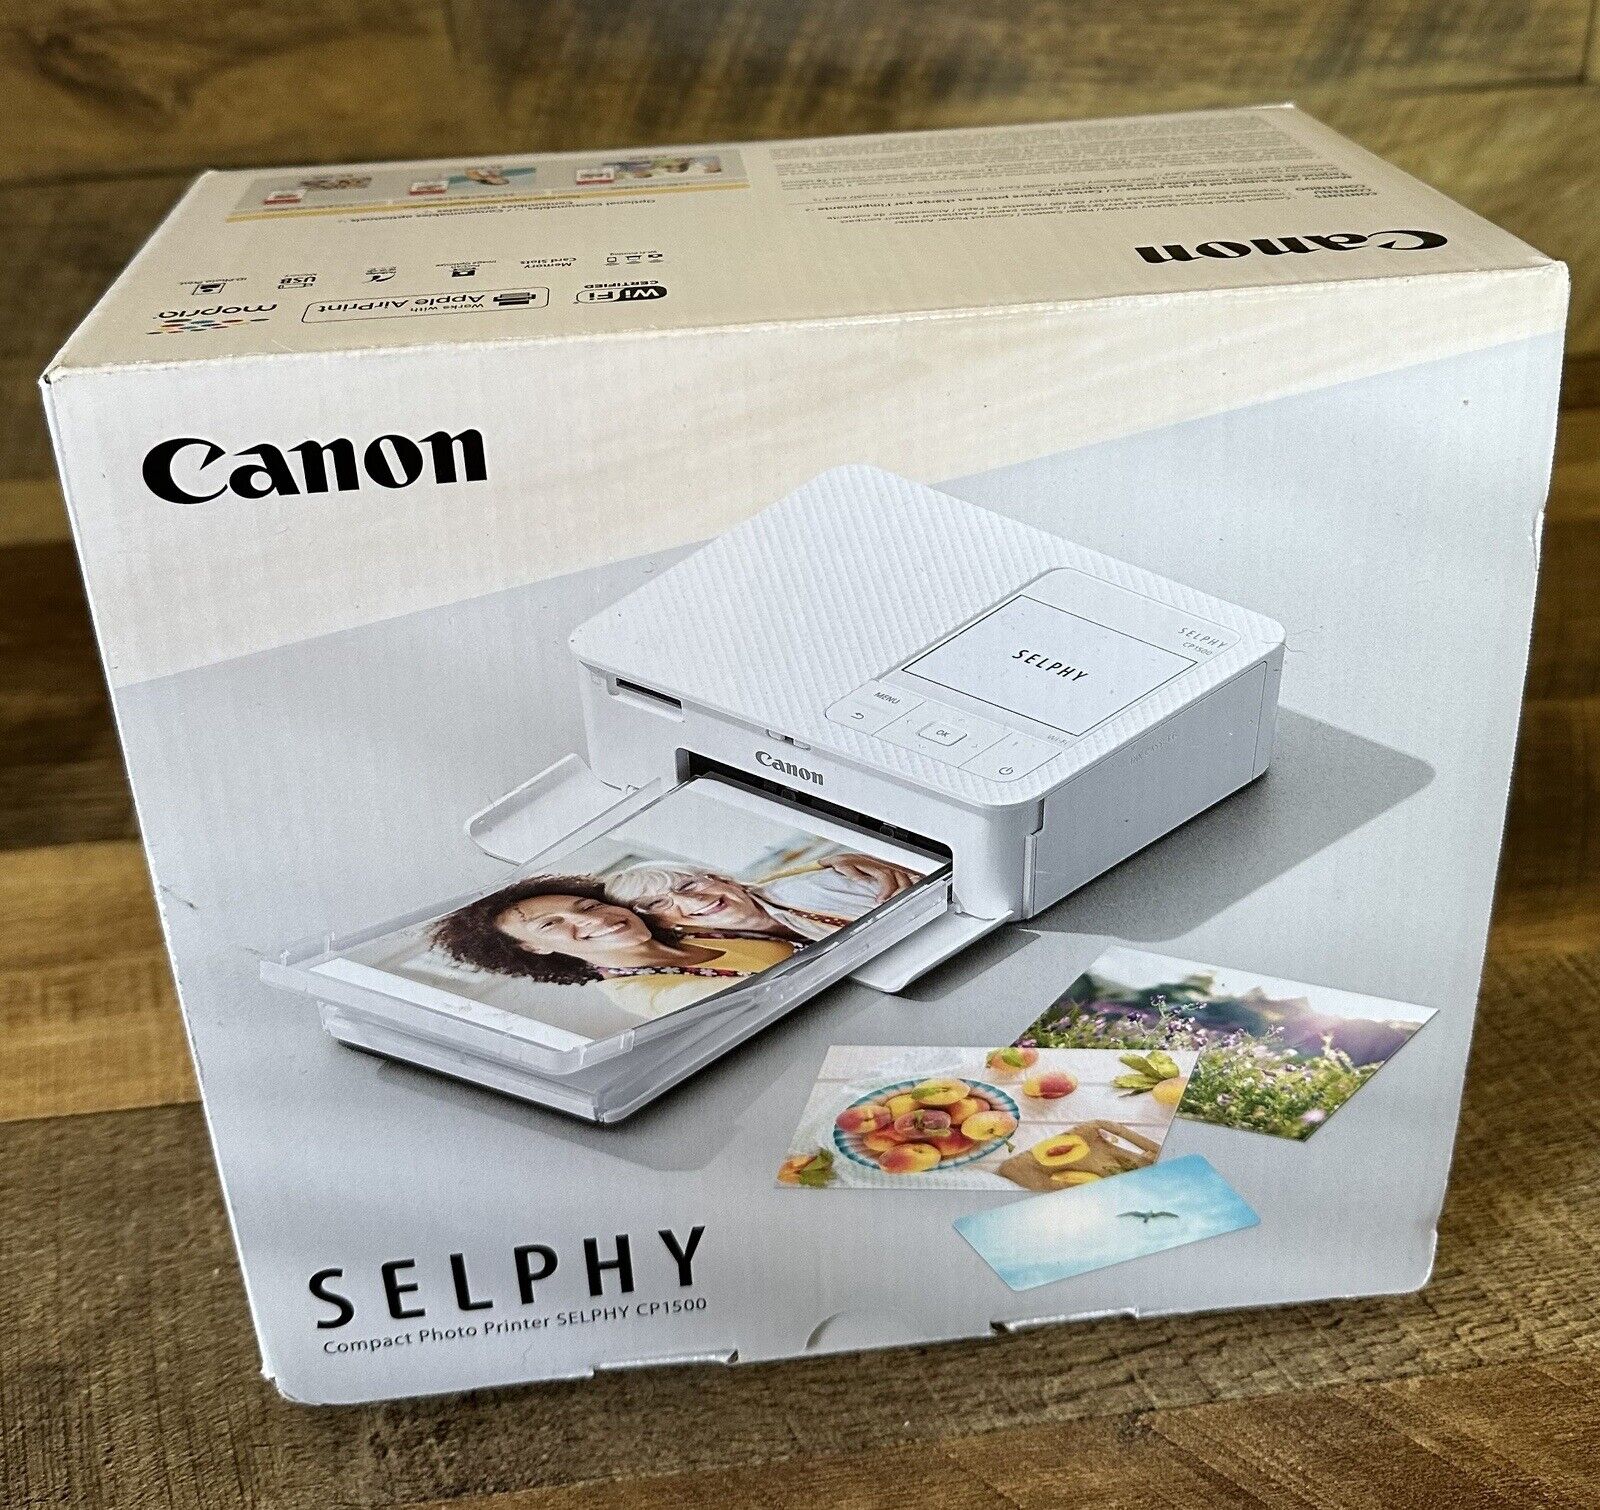 Canon Selphy CP1500 NIB Portable Photo Printer - White